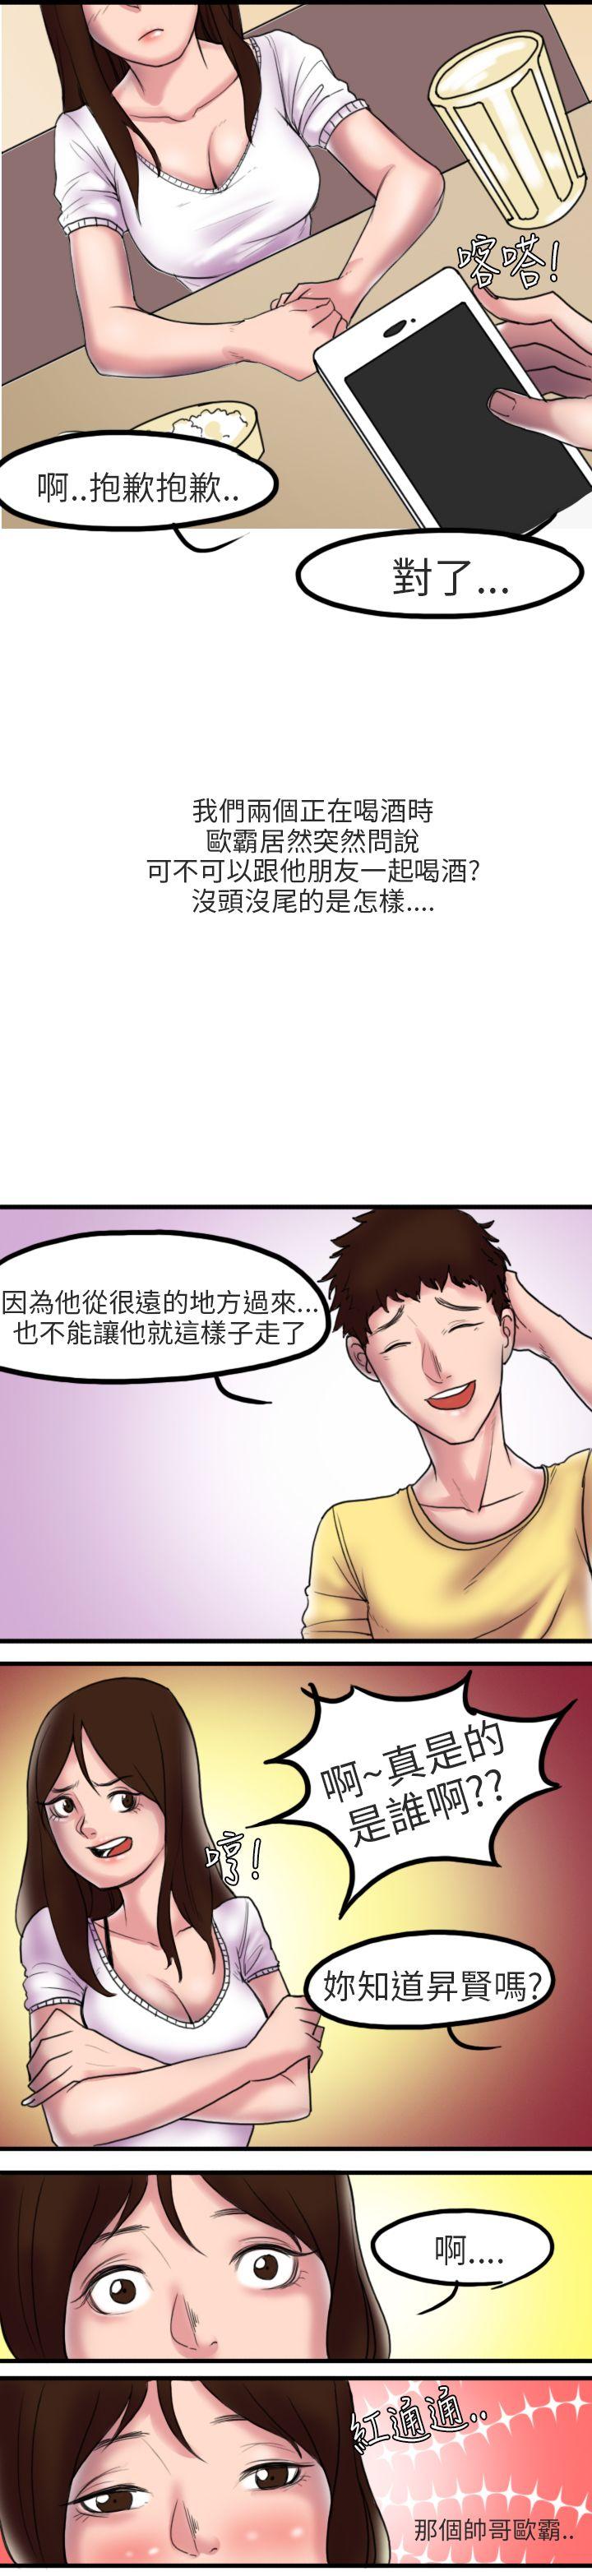 韩国污漫画 秘密Story第二季 床与墙壁之间(上) 4